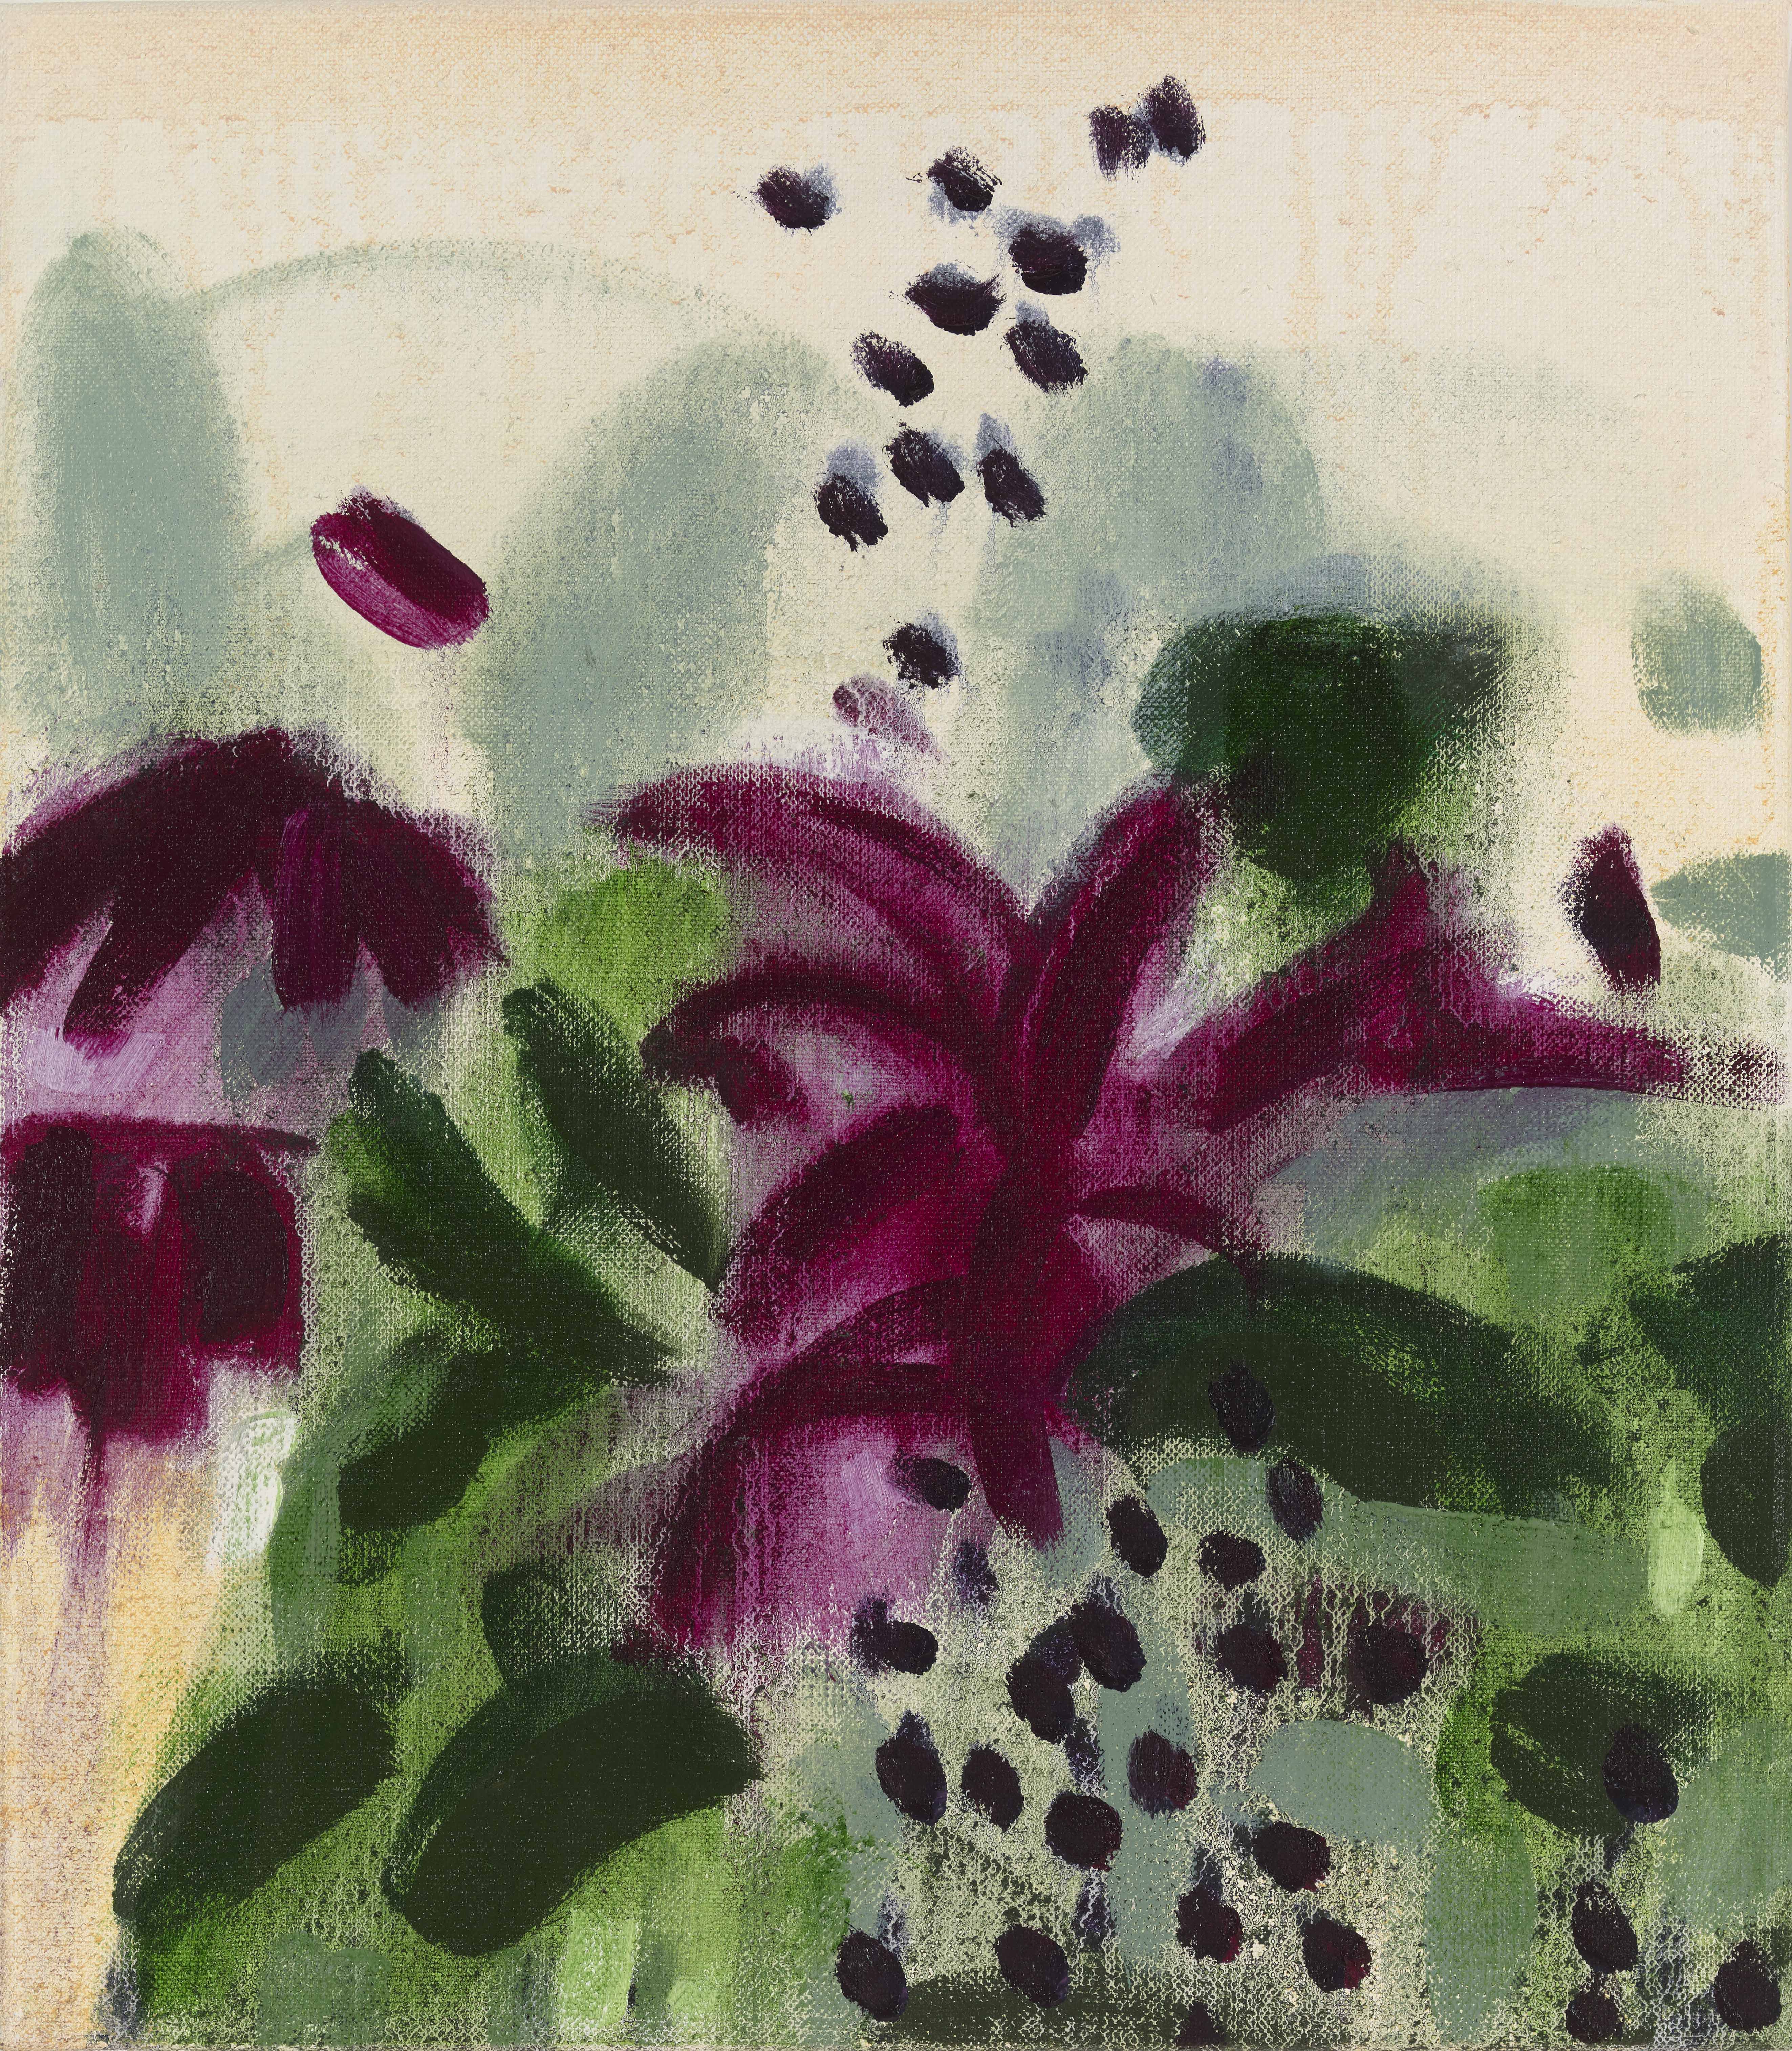 Eileen Gillespie, Crimson Flowers, 2021, oil on linen, 16 x 14 inches